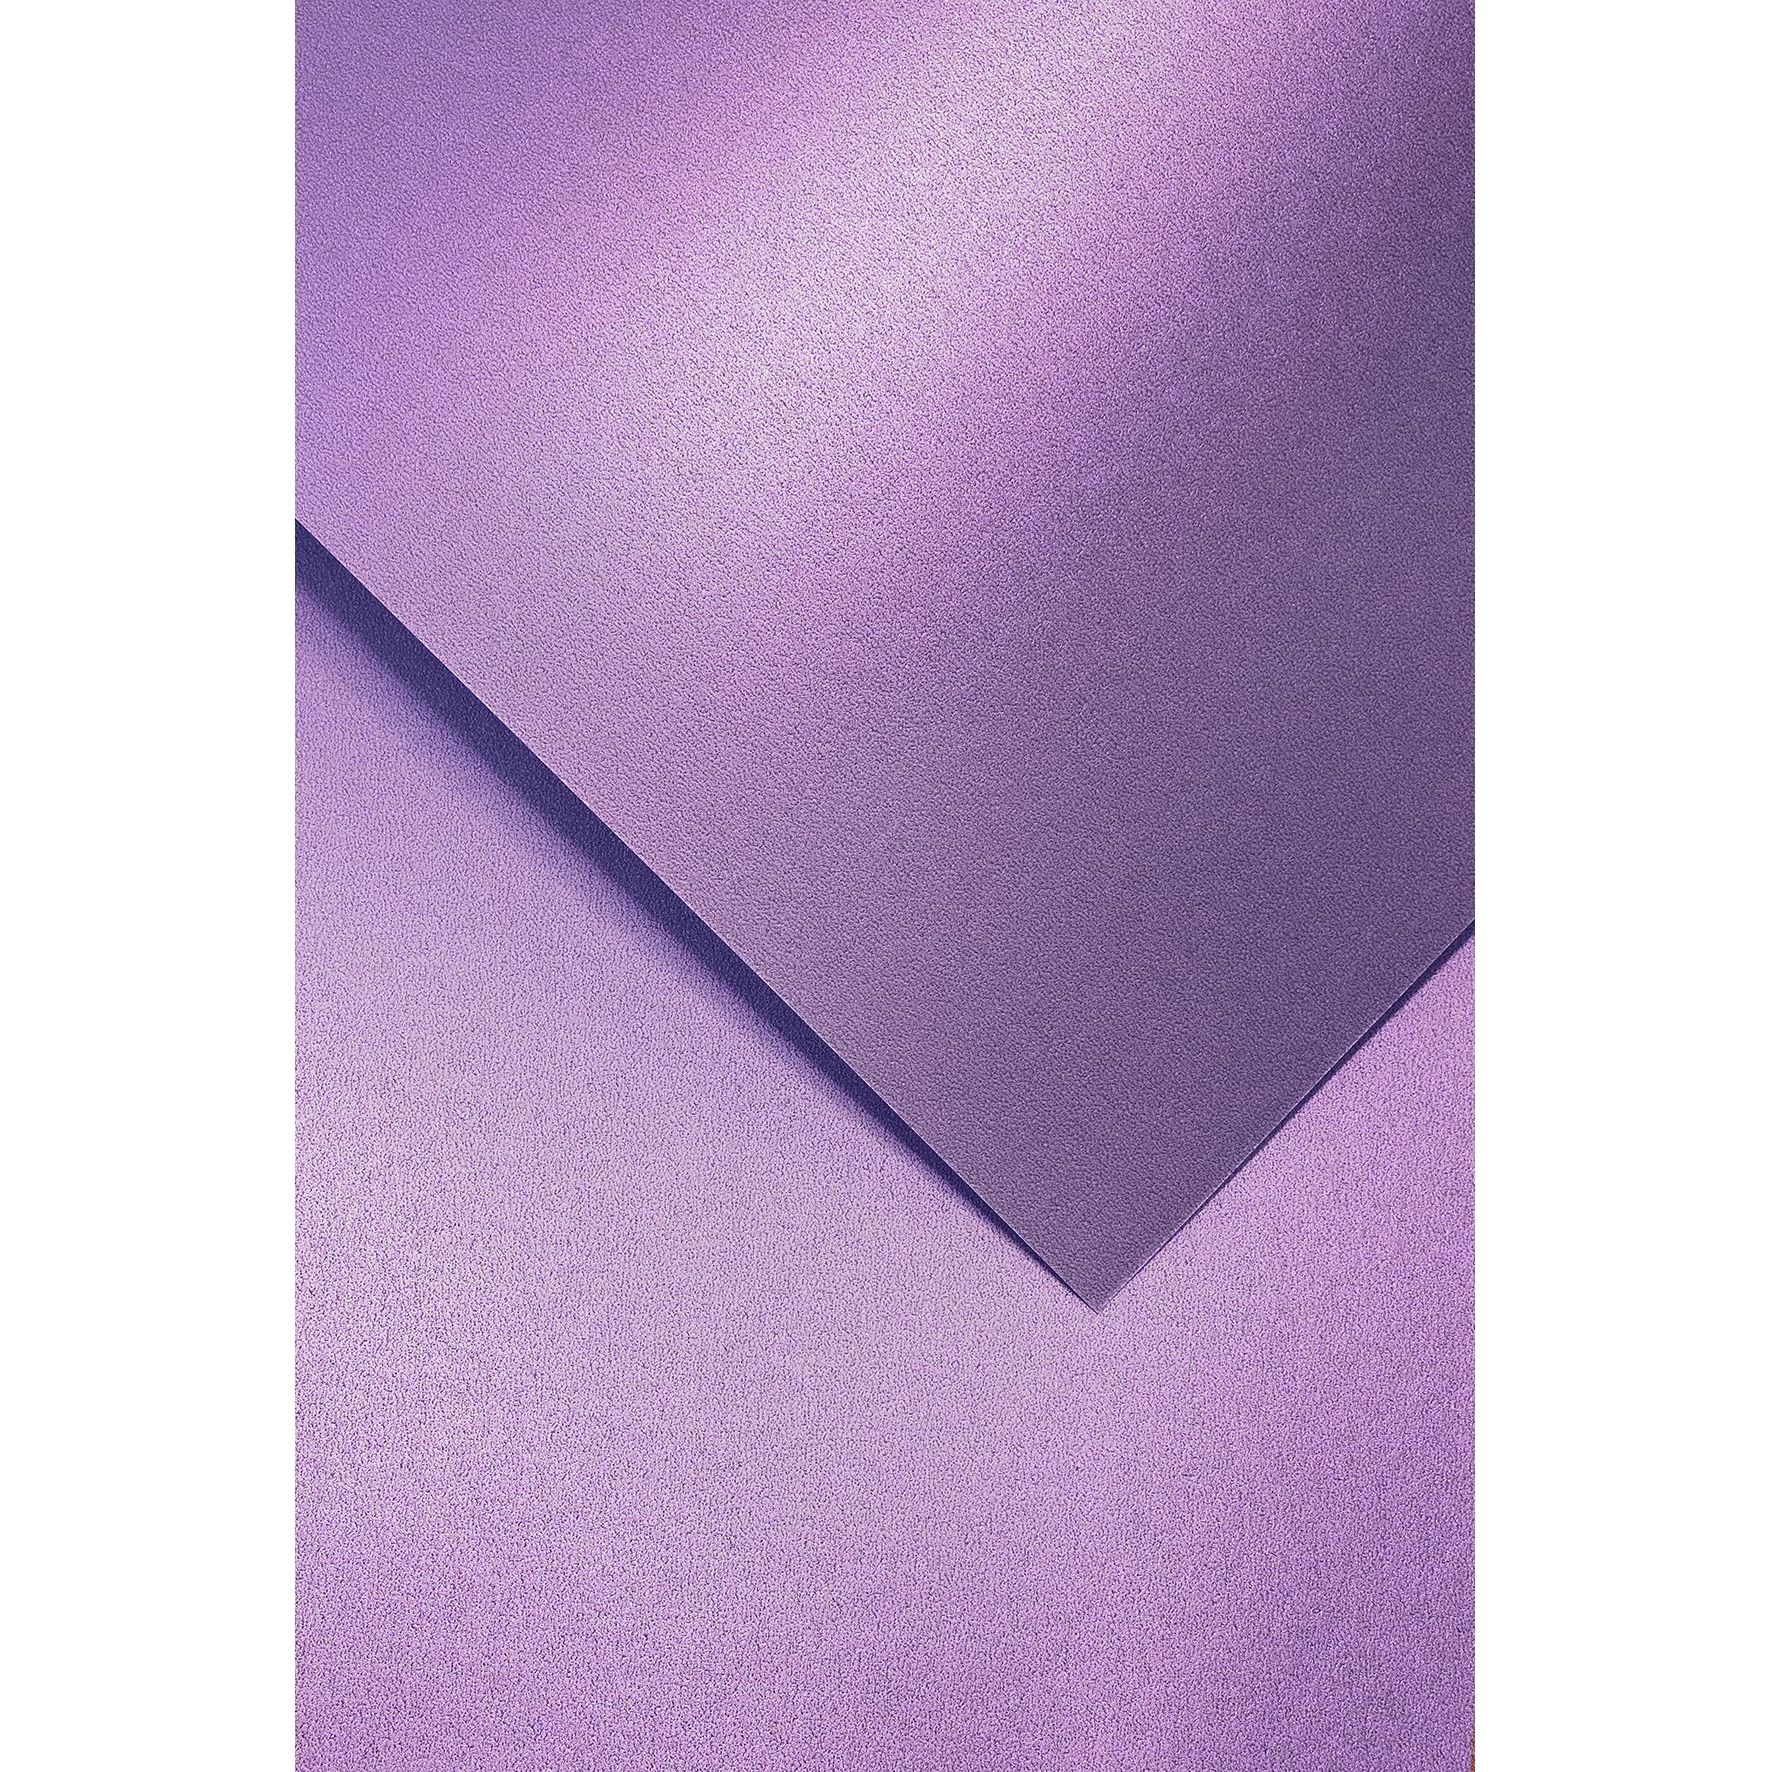 Ozdobný papír Millenium, fialový, 220g, 20ks